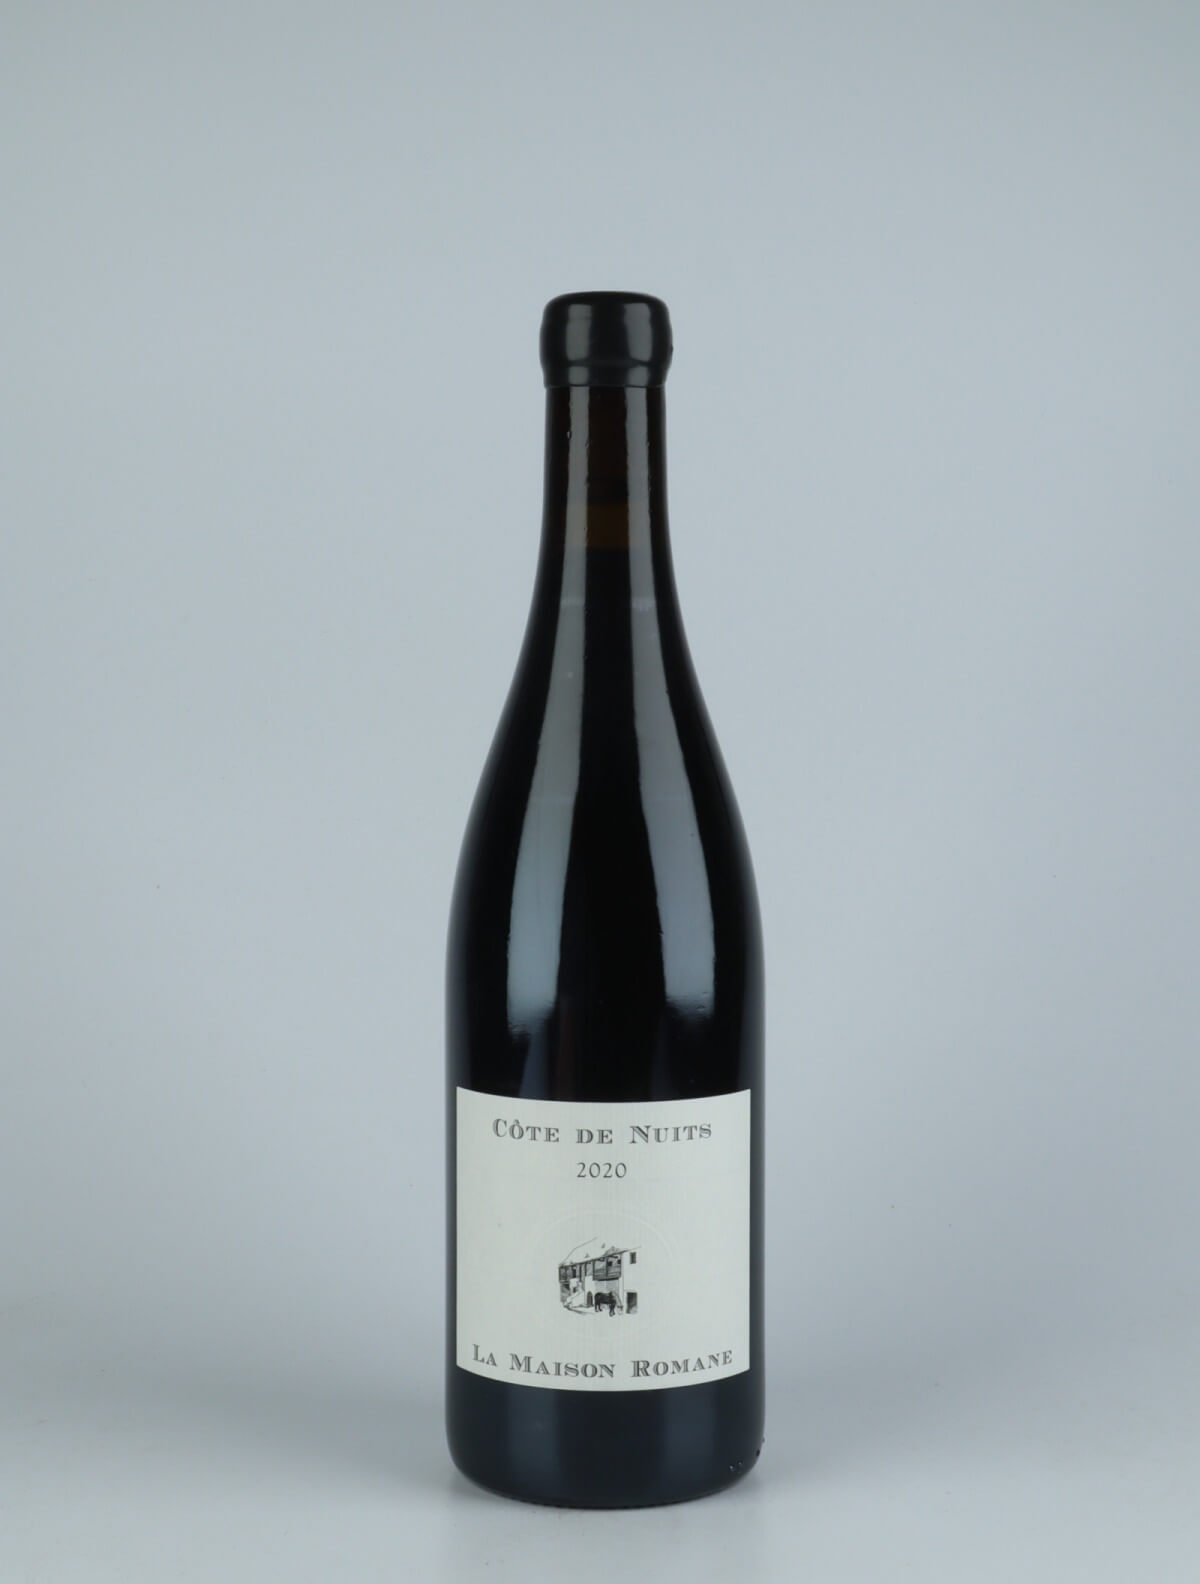 En flaske 2020 Côtes de Nuits Villages Rødvin fra La Maison Romane, Bourgogne i Frankrig